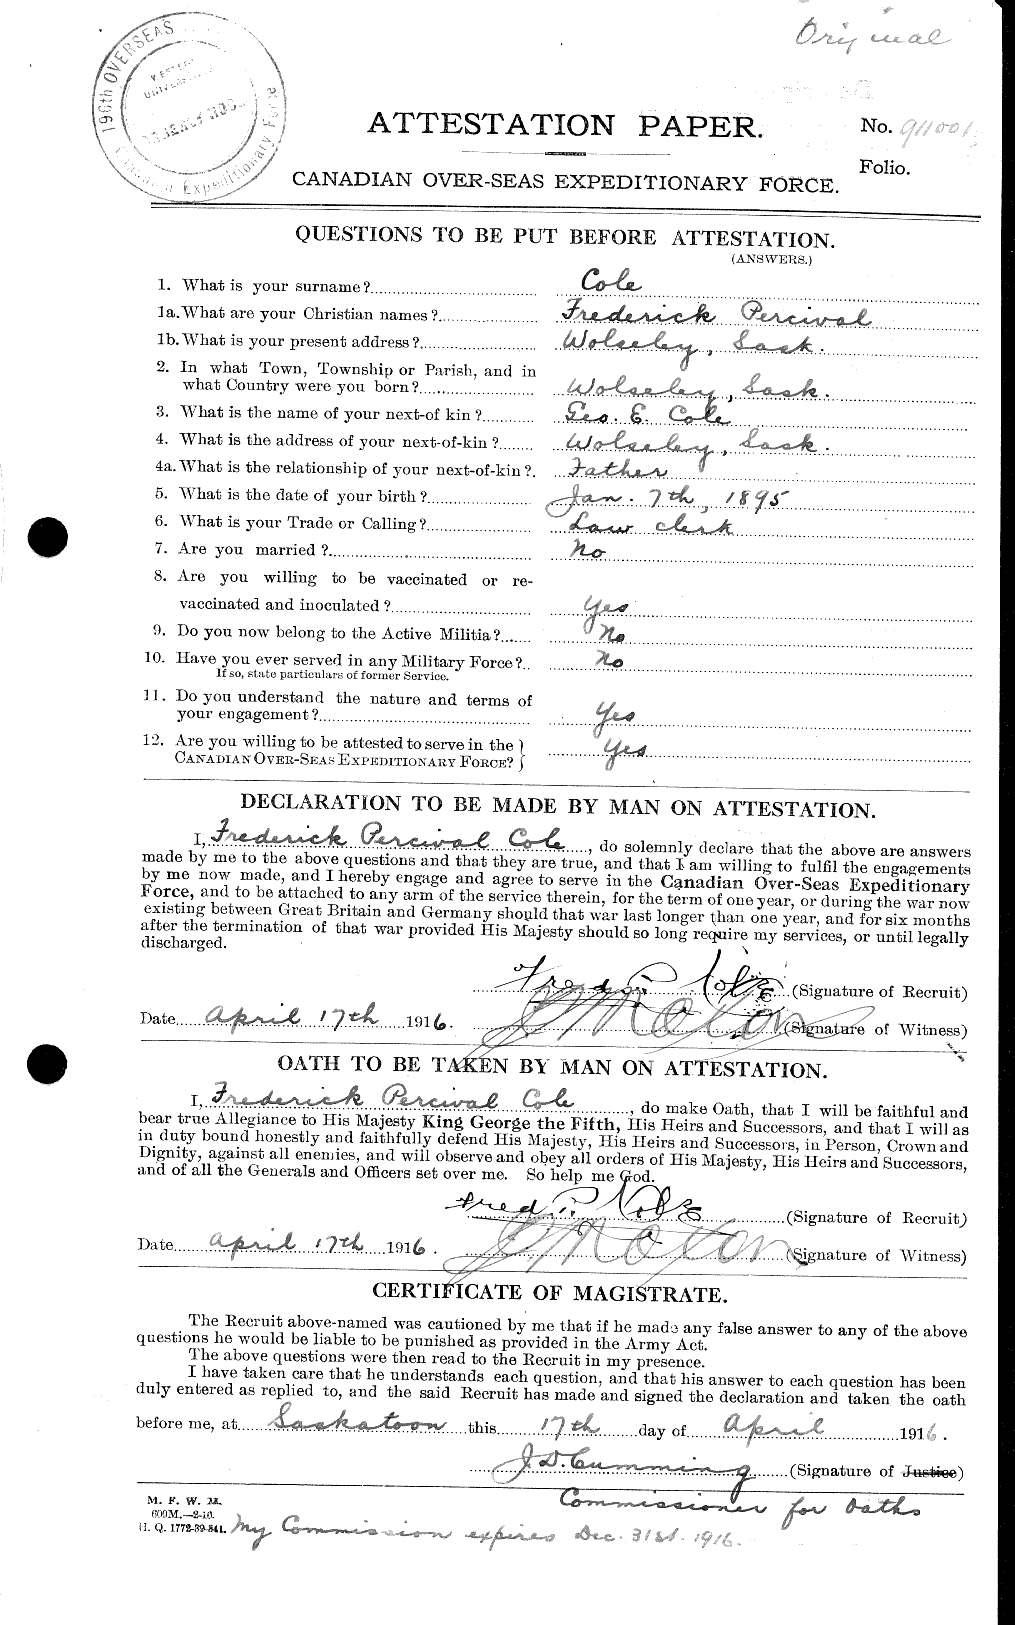 Dossiers du Personnel de la Première Guerre mondiale - CEC 027742a